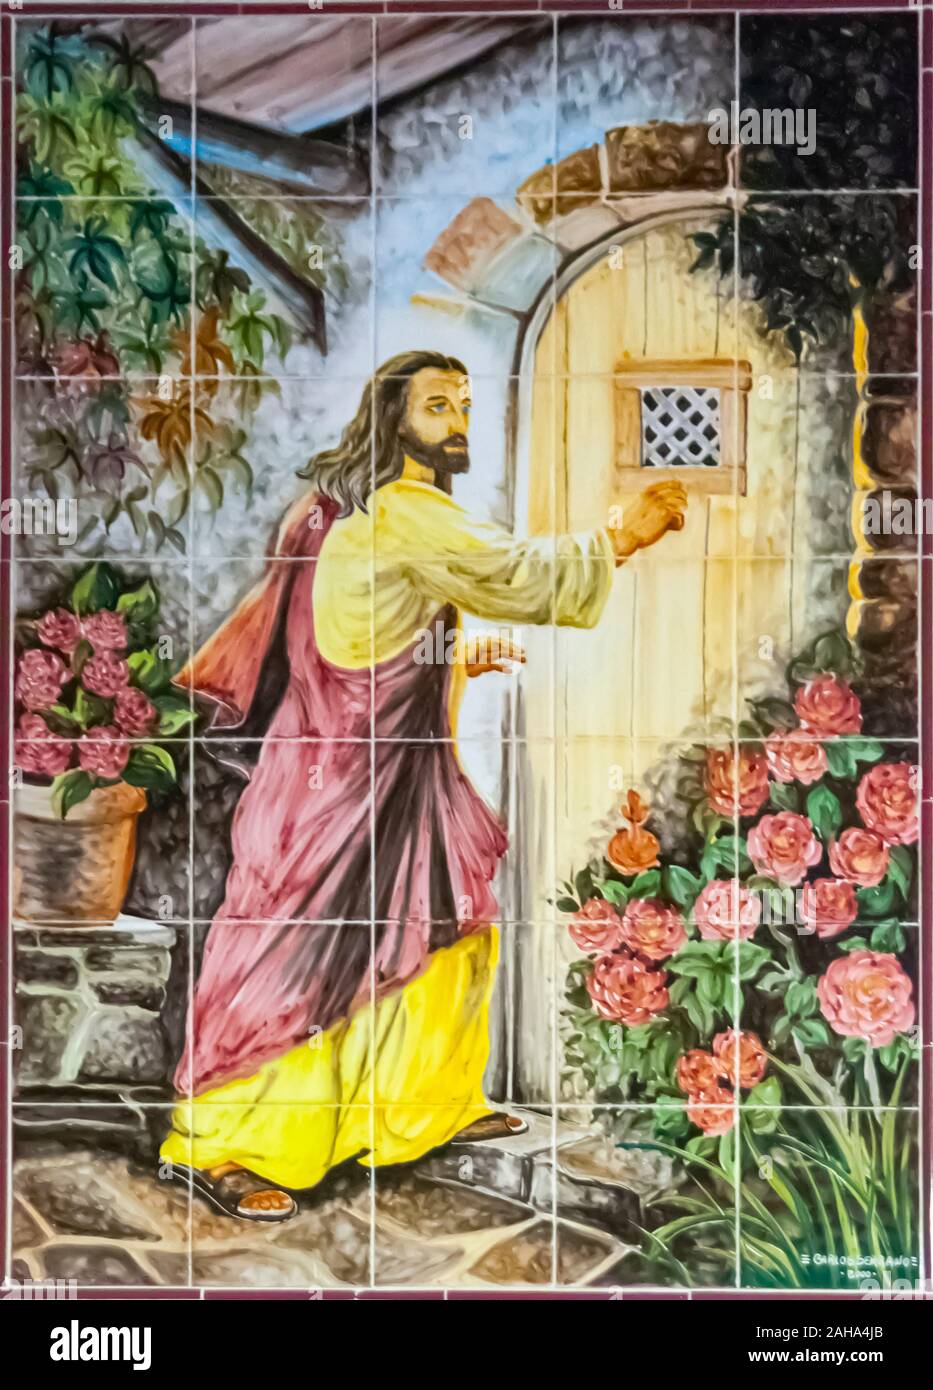 Christlich-religiöse Kunst (Jesus klopft an der Tür) in handbemalten Keramikfliesen. In Nazare, Portugal fotografiert. Stockfoto